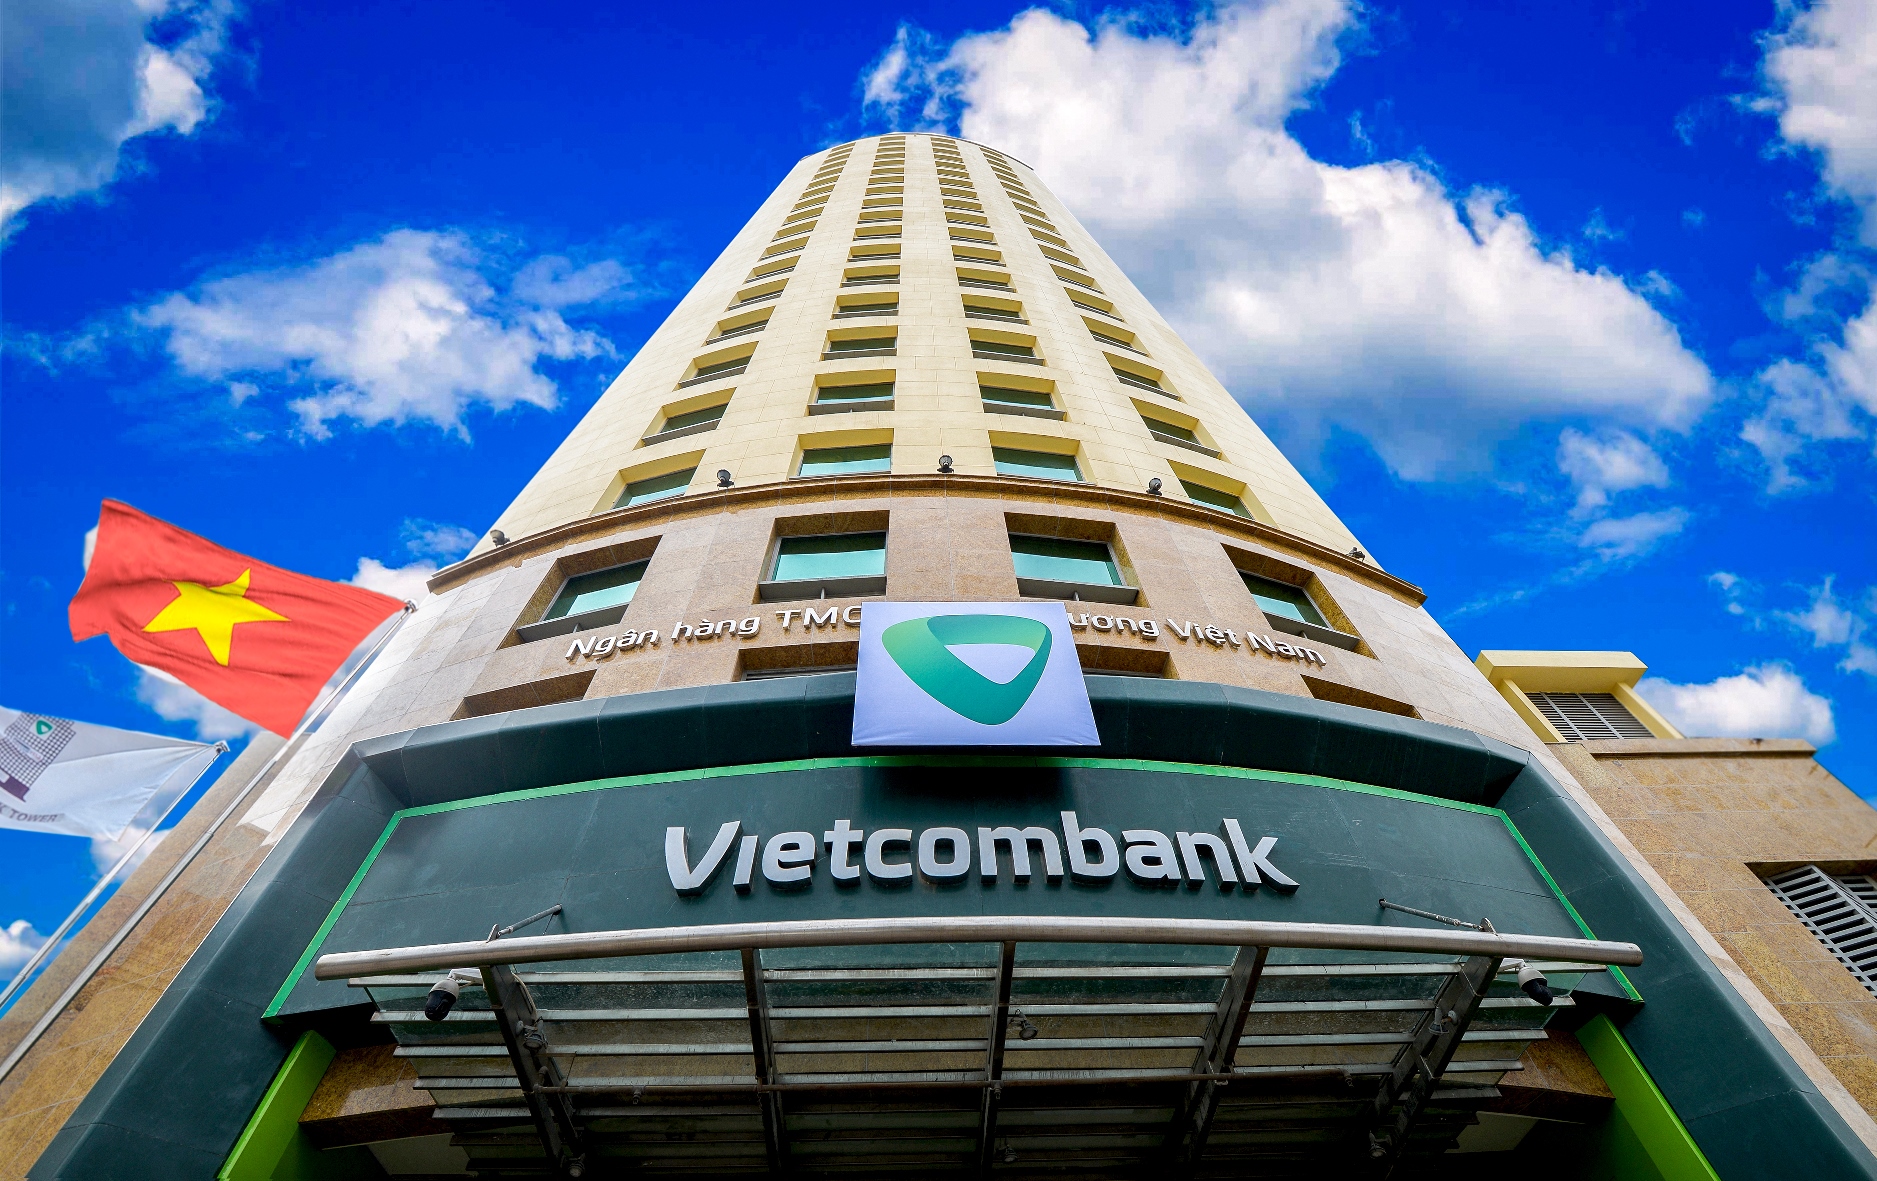 Vietcombank giảm lãi suất tiền vay và phí hỗ trợ khách hàng tại hai tỉnh Bắc Giang và Bắc Ninh - Ảnh 1.